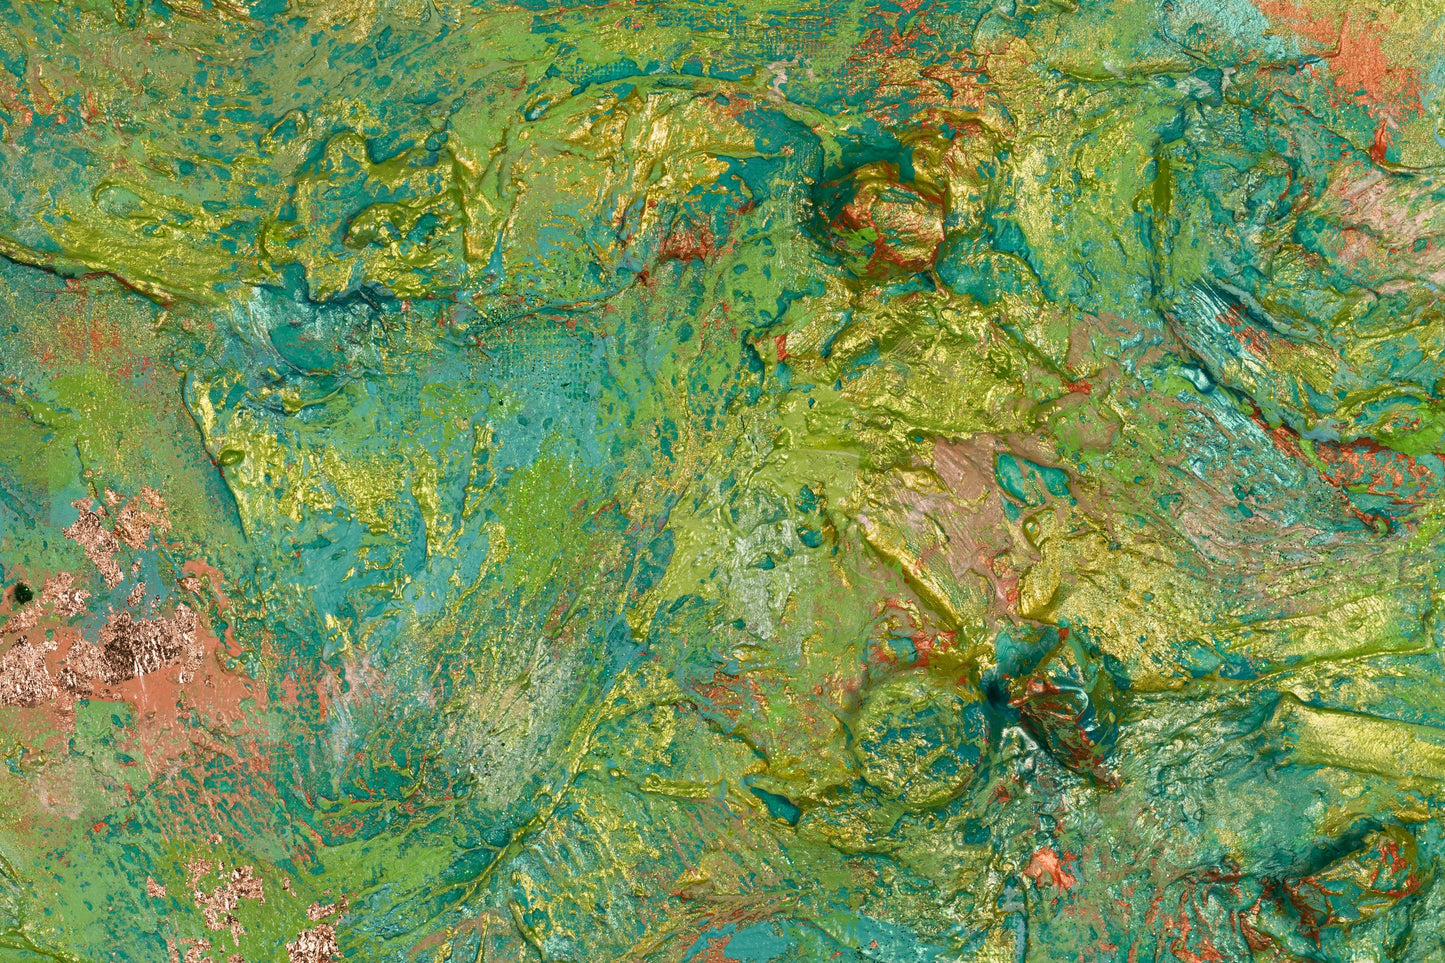 Iapetus : 47" x 36" - 120 x 100 cm